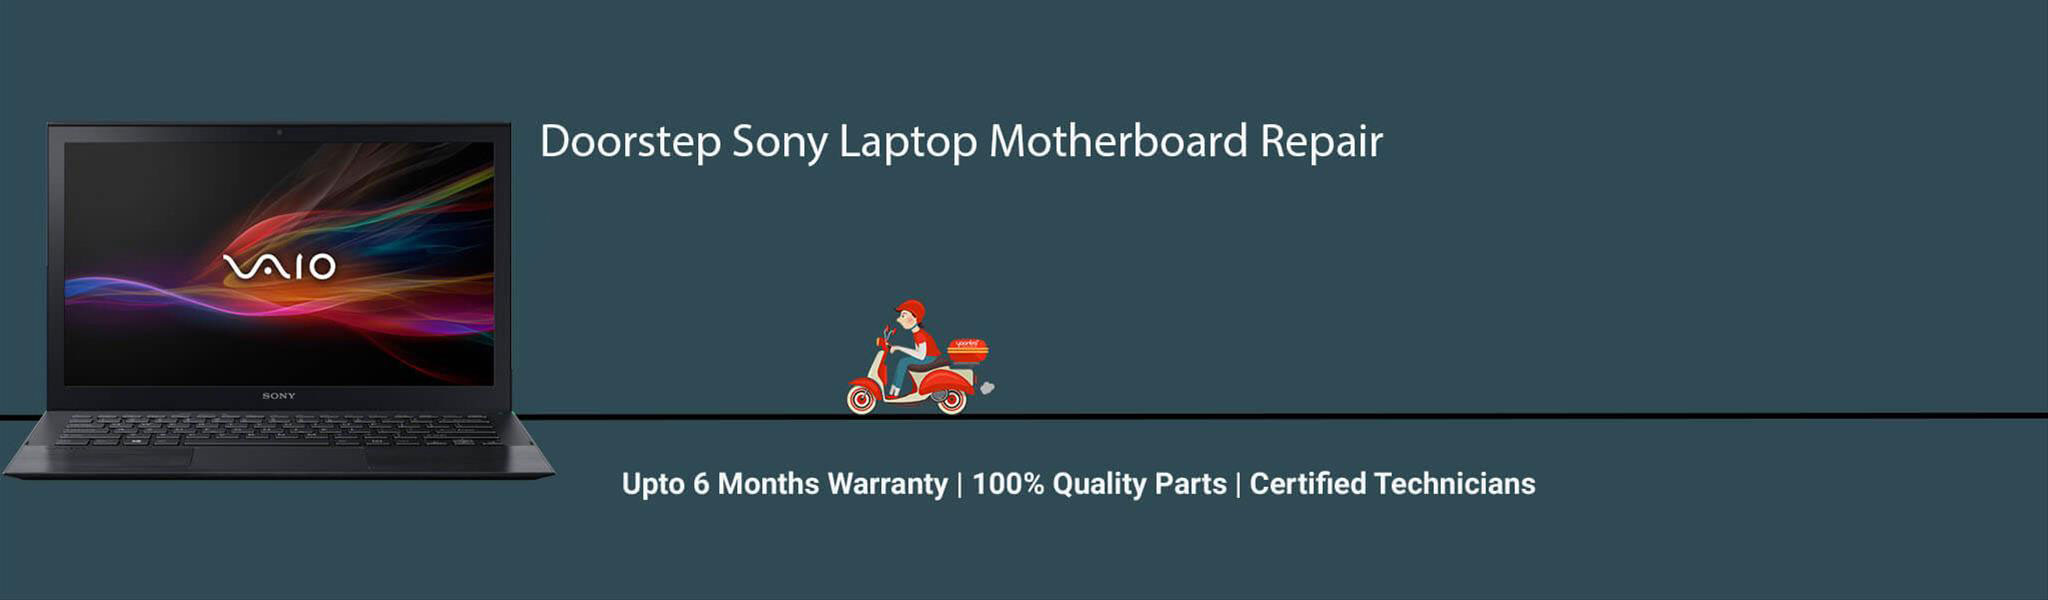 sony-laptop-motherboard-repair.jpg